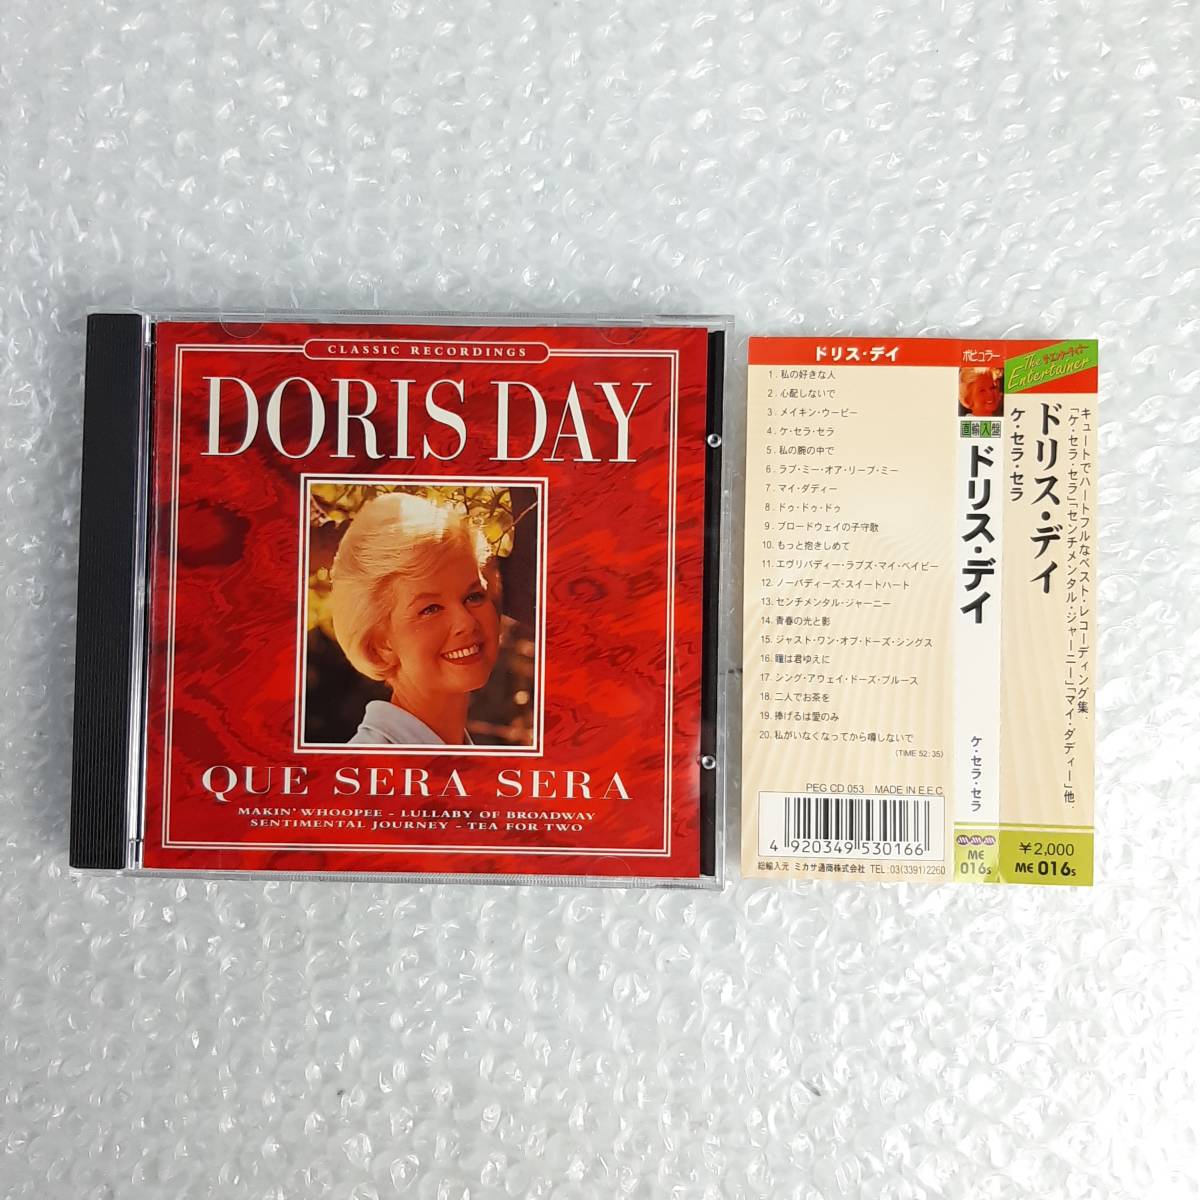 ドリス・デイ ケ・セラ・セラ DORIS DAY QUE SERA SERA CD PEG CD 053 帯付き_画像1